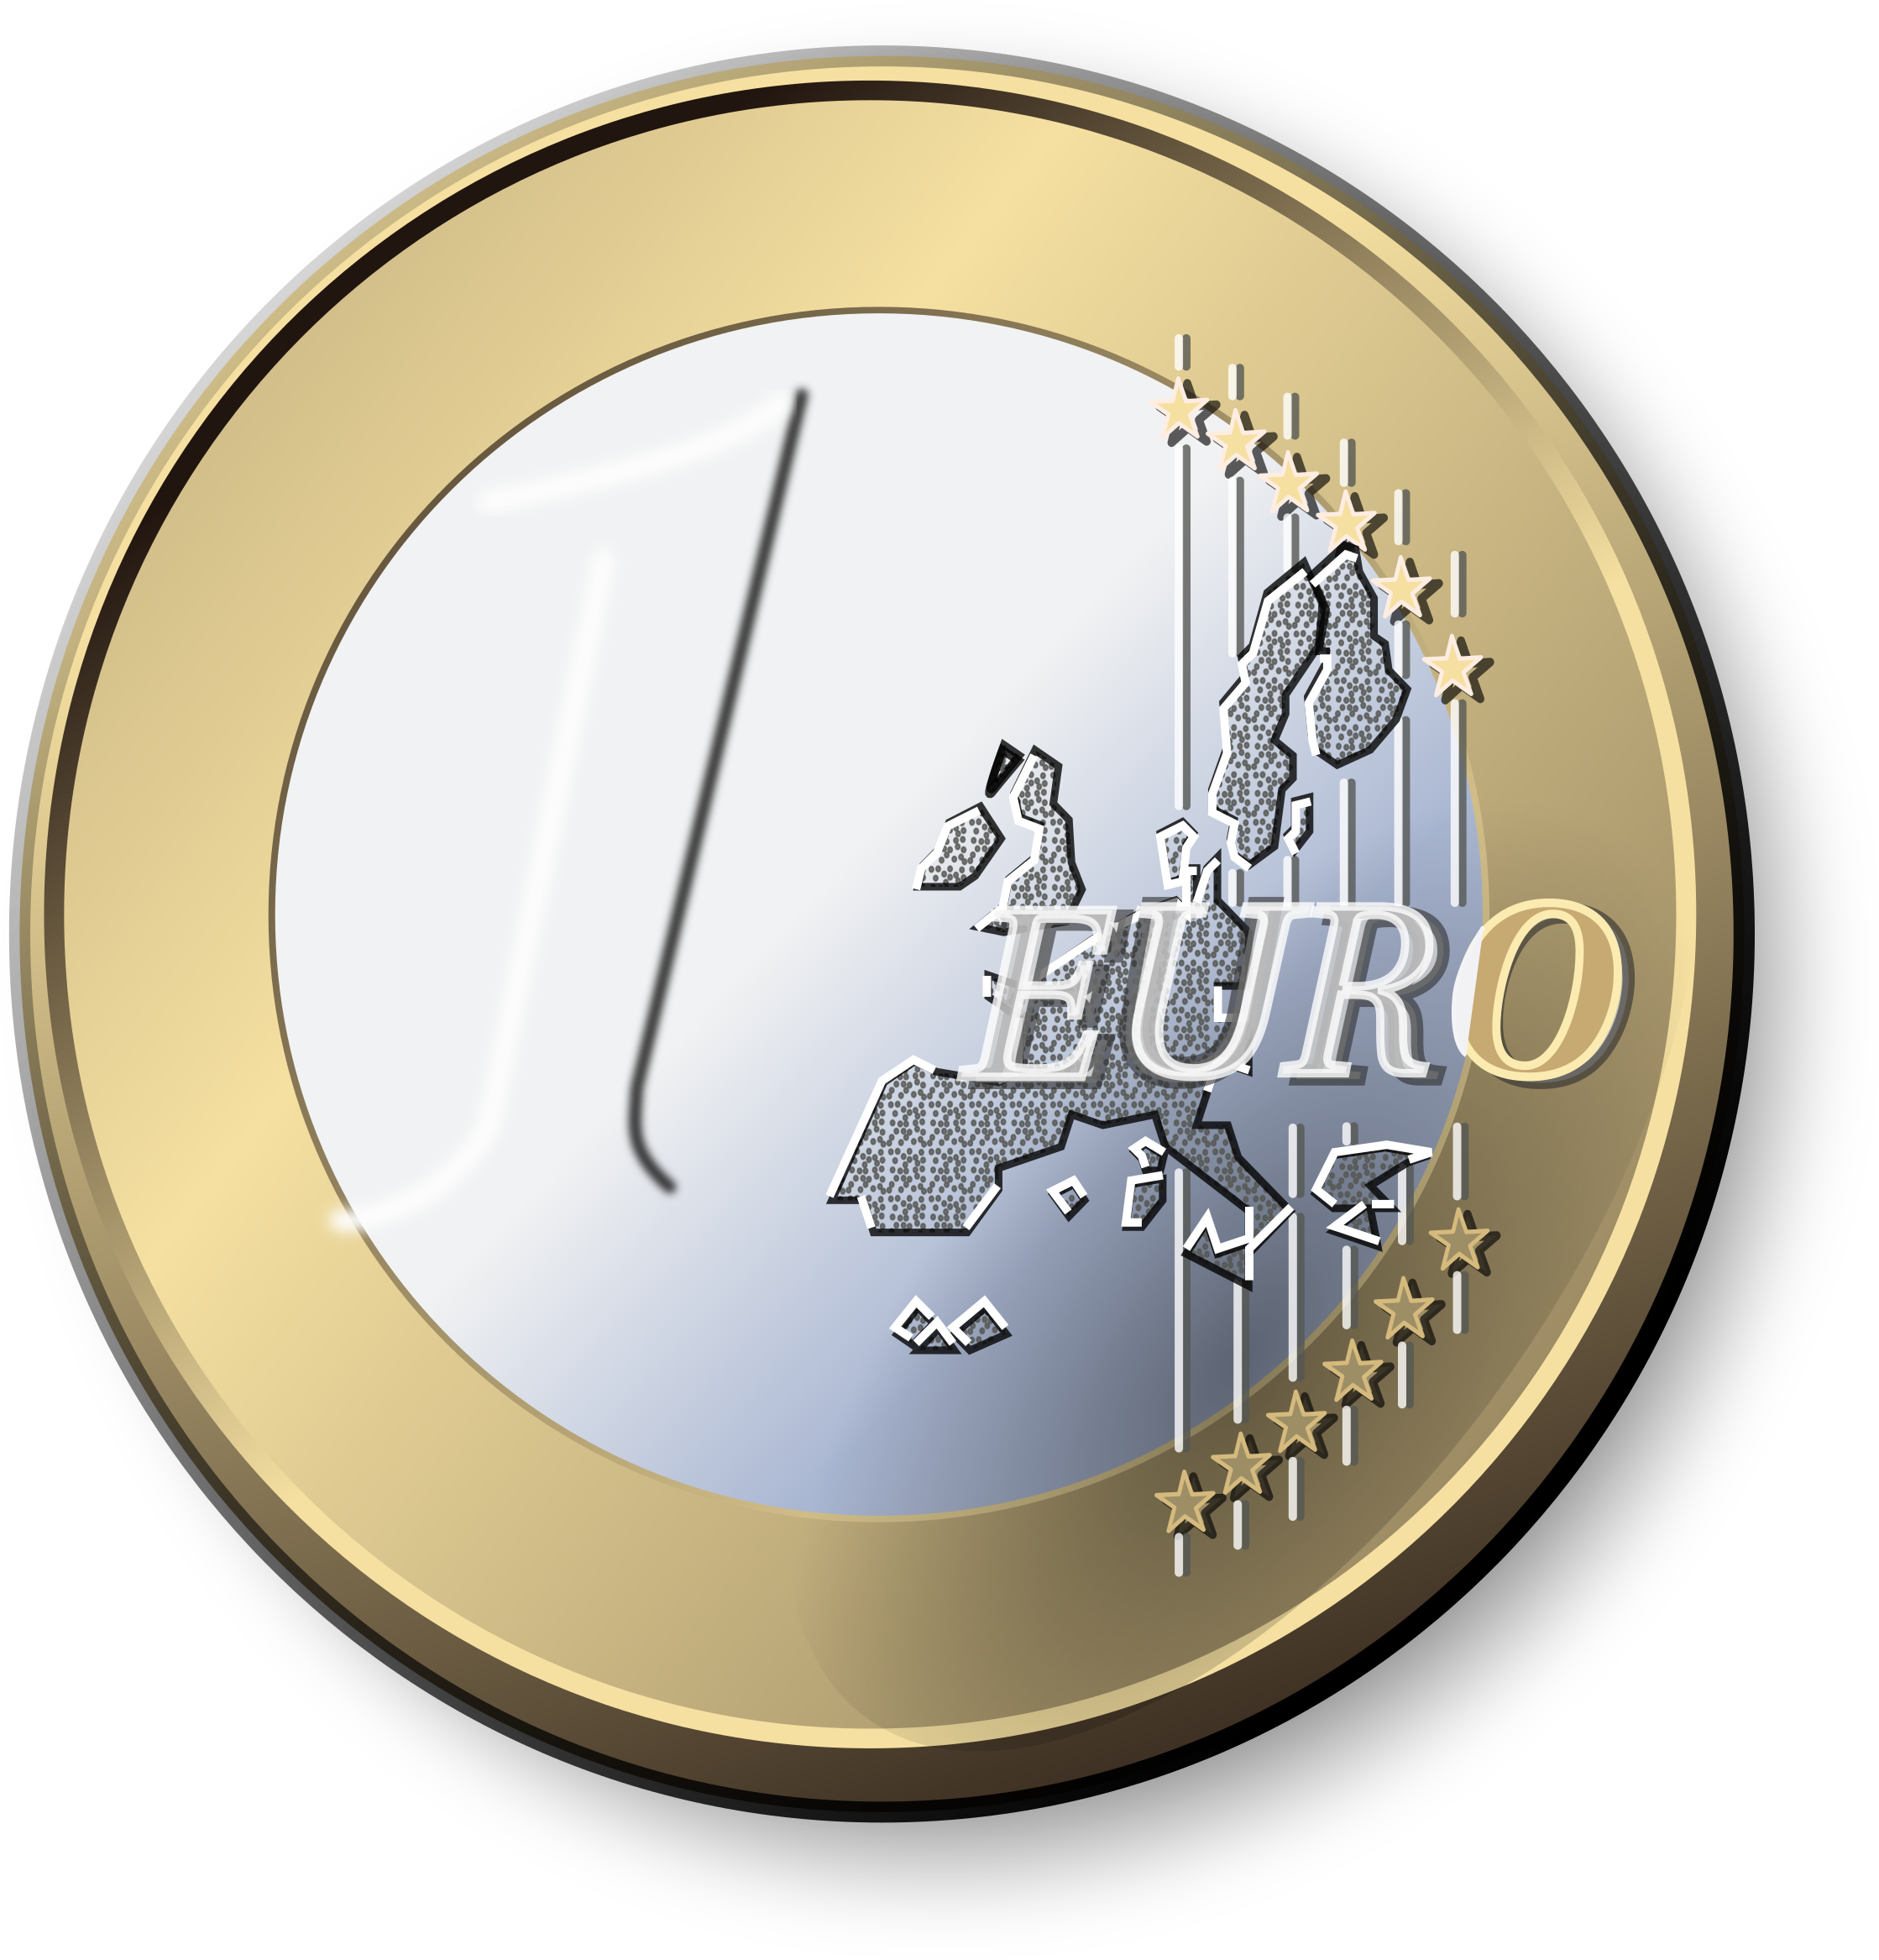 One Euro Coin - Euro Coin Transparent (2400x2400)